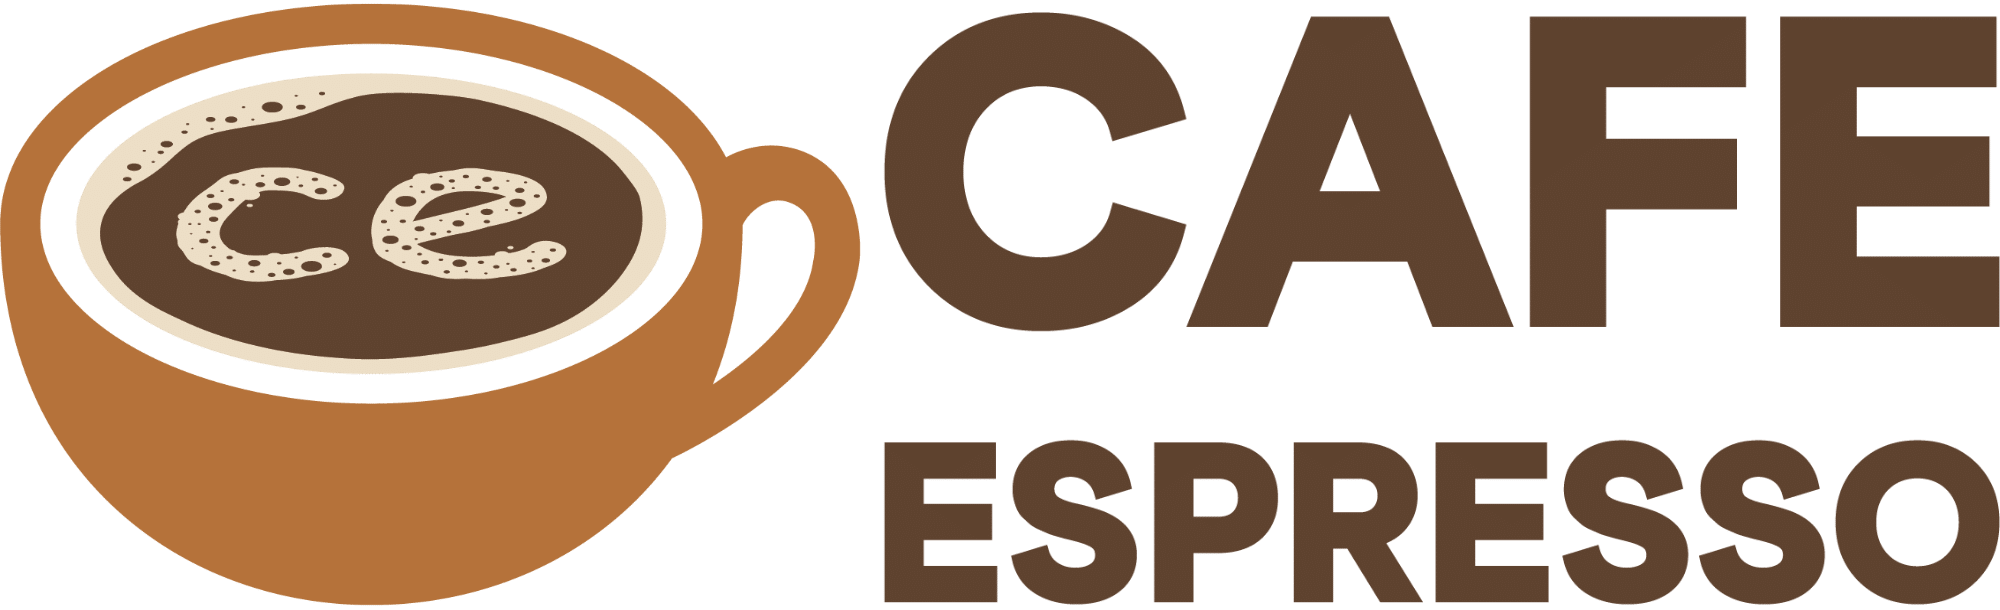 My Cafe Game: Guía de todas las recetas con café espresso - Cafe Espresso